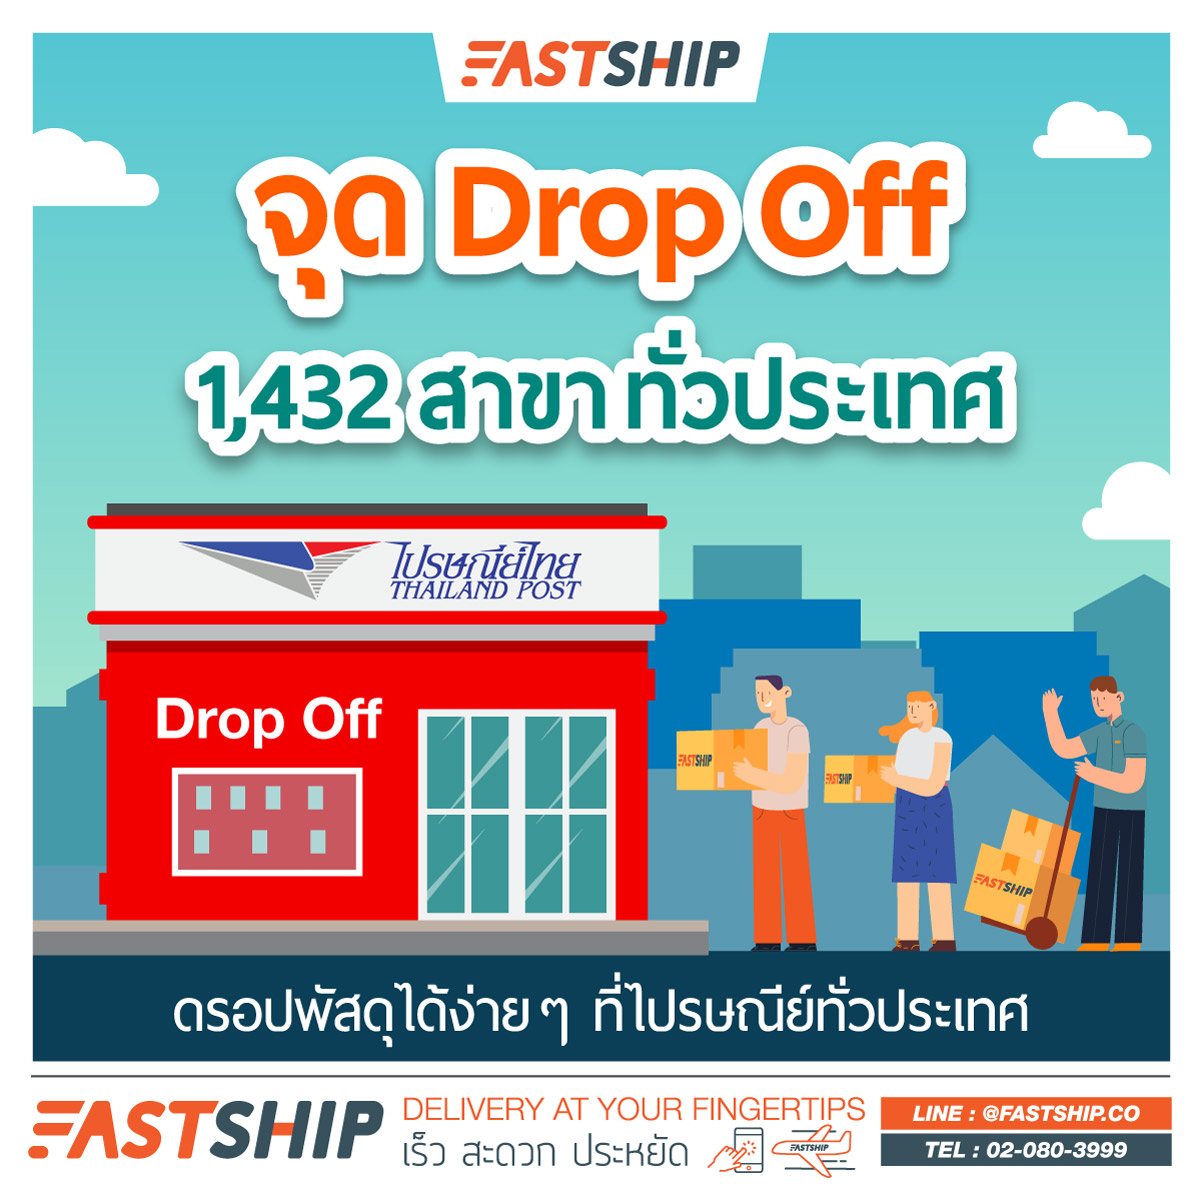 รวมจุด Drop Off ไปรษณีย์ไทย - Fastship.Co